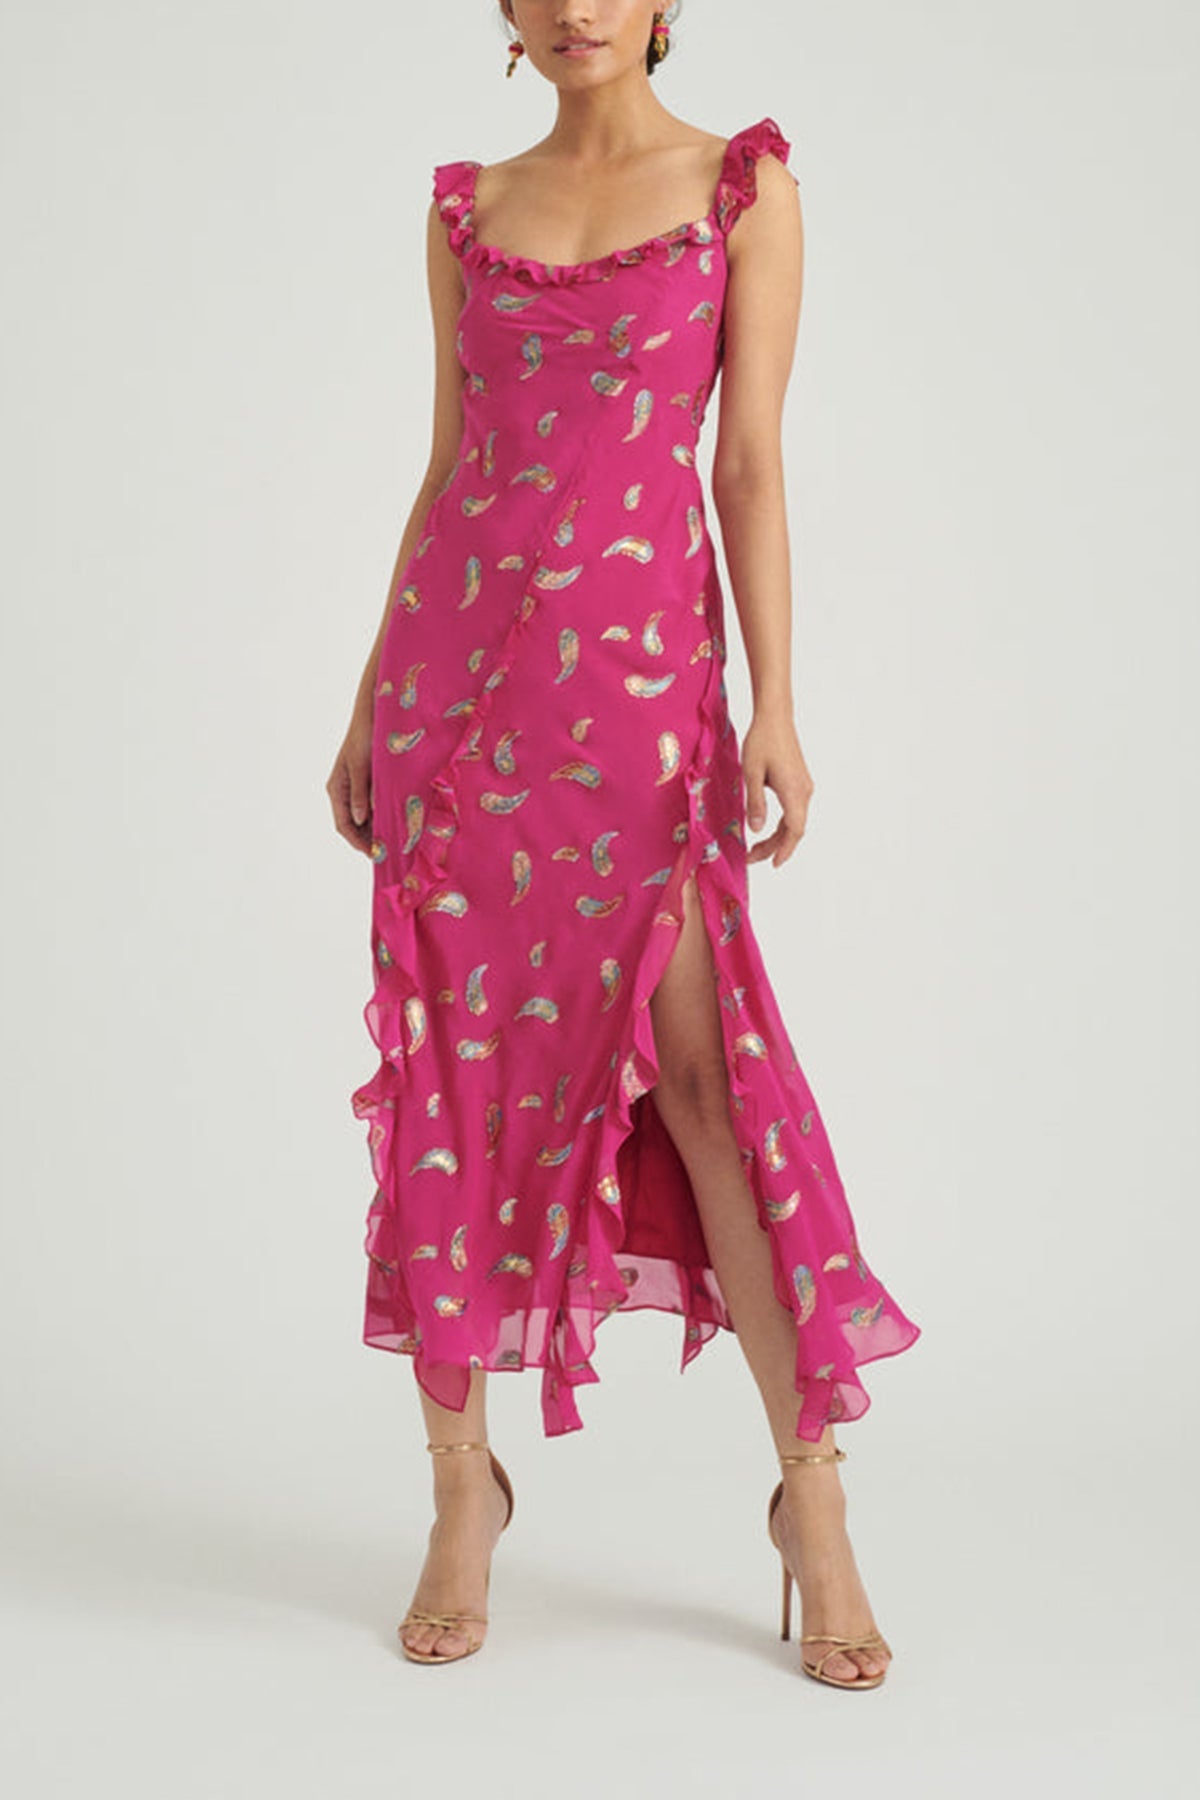 Azalea Dress in Fuchsia Rainbow - shop-olivia.com